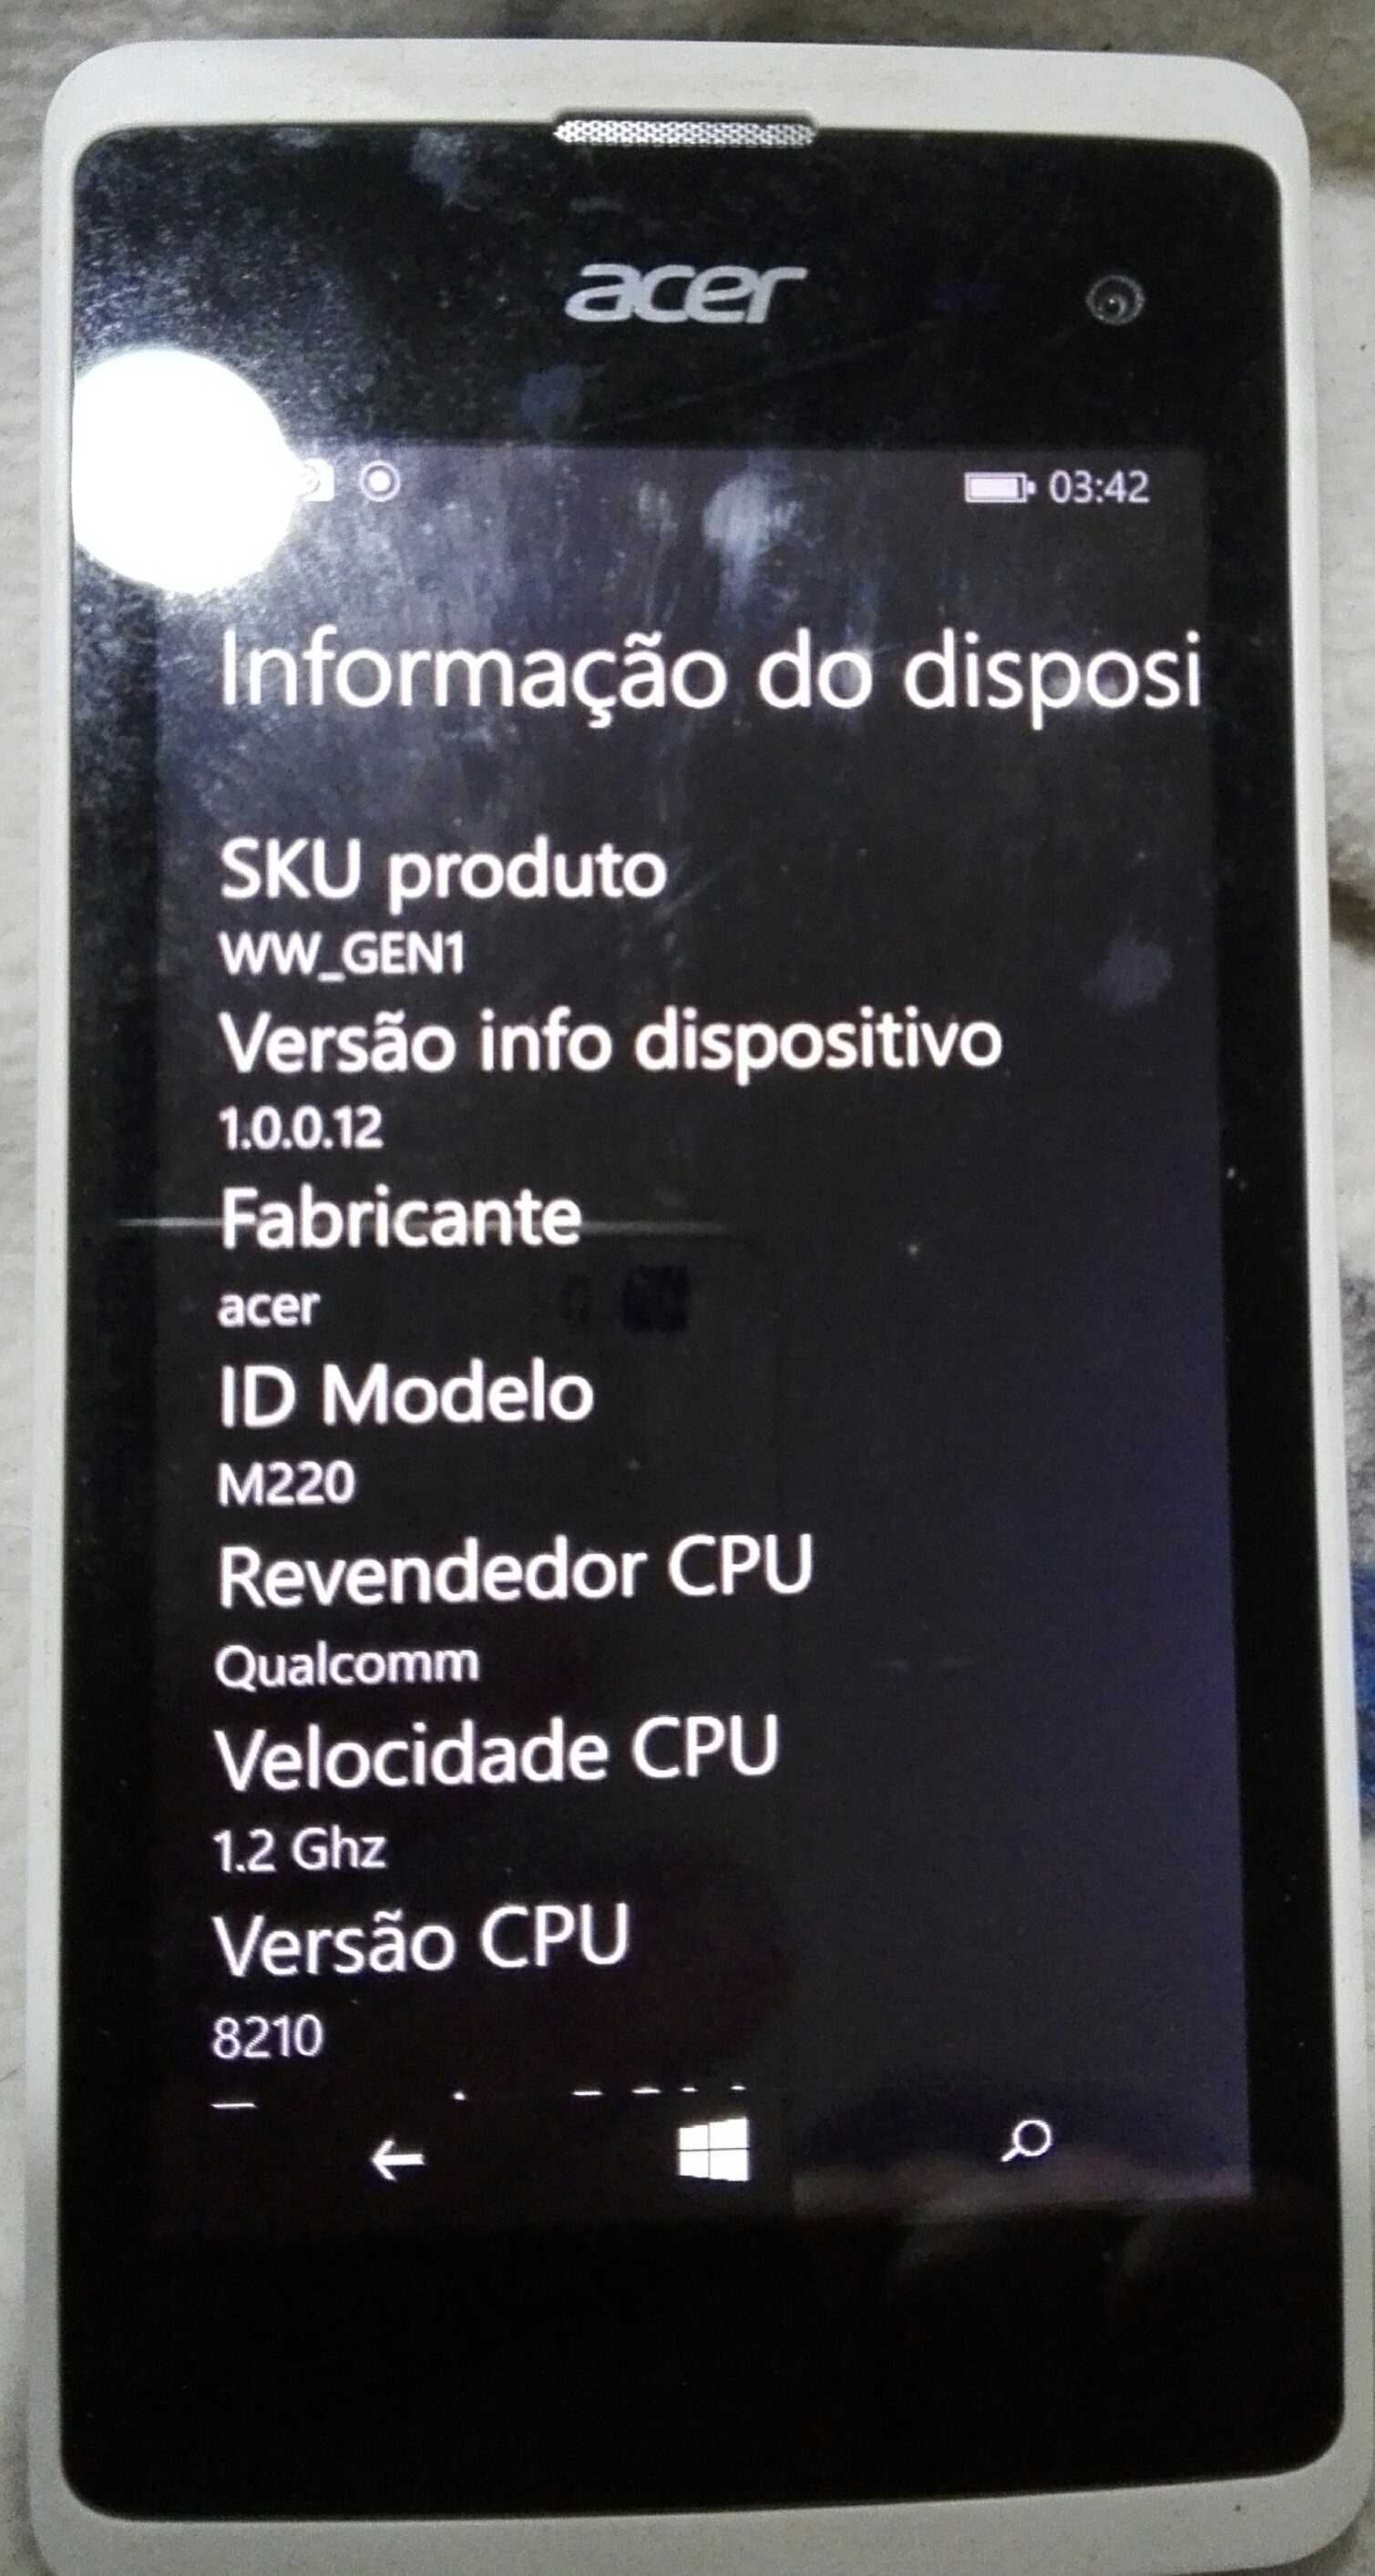 Acer M220 - windows phone - portes incluídos